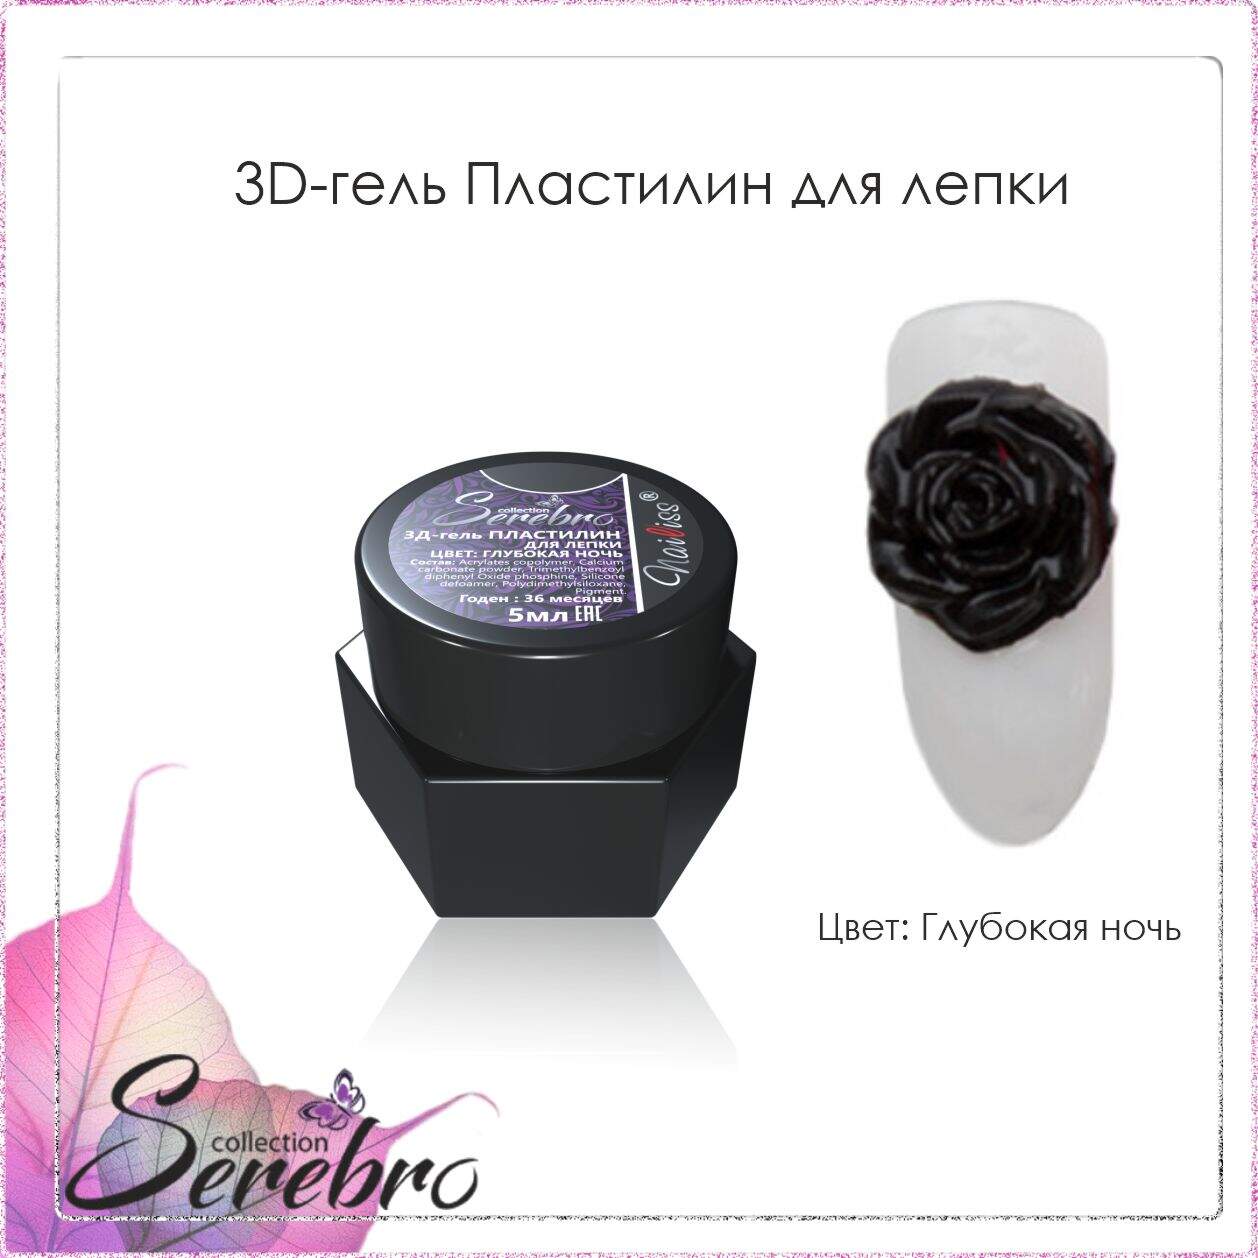 3D гель Пластилин для лепки "Serebro" (глубокая ночь), 5 мл